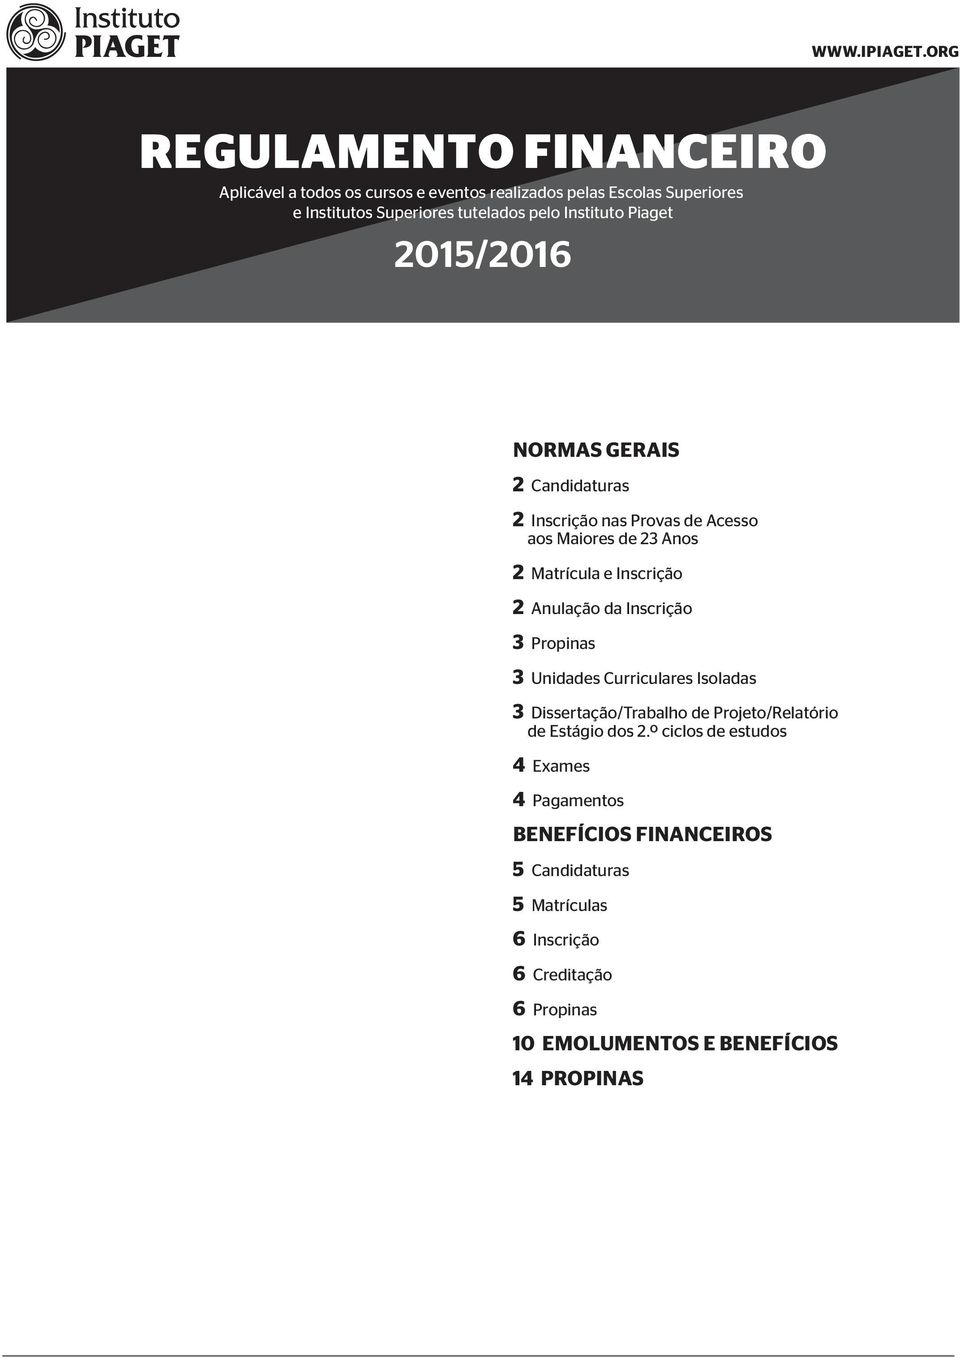 Instituto Piaget 2015/2016 NORMAS GERAIS 2 Candidaturas 2 Inscrição nas Provas de Acesso aos Maiores de 23 Anos 2 Matrícula e Inscrição 2 Anulação